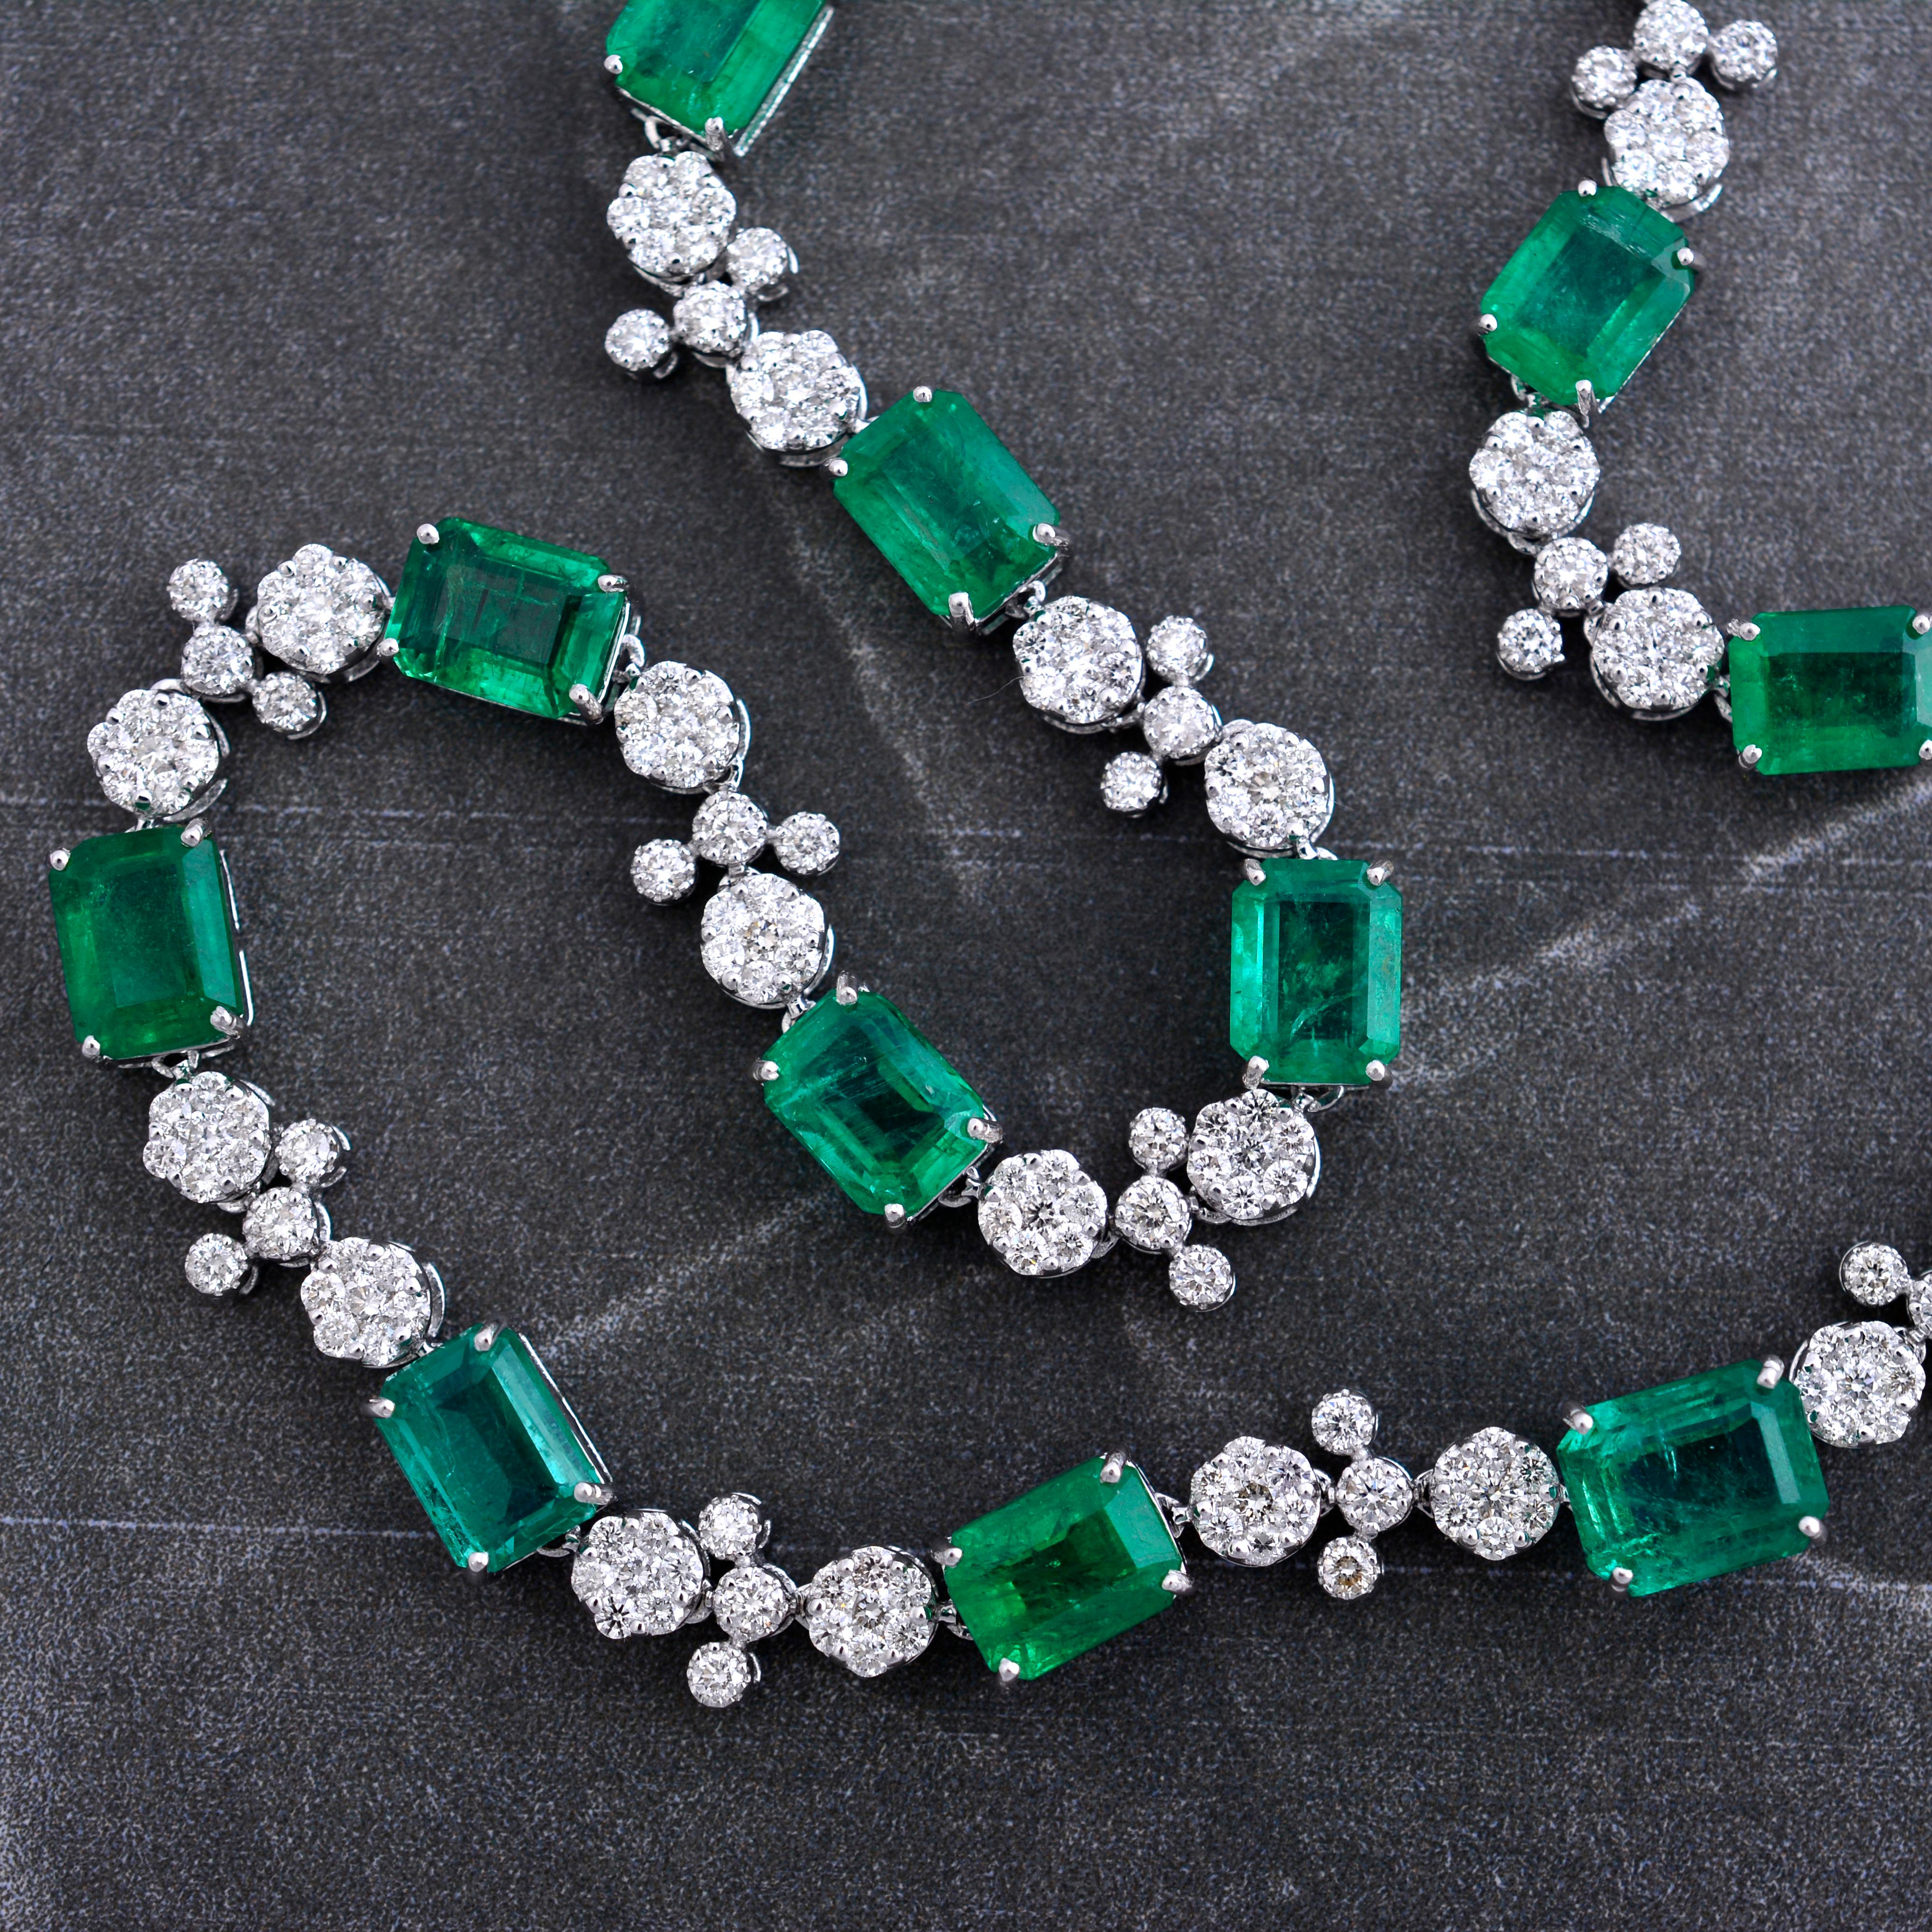 Erweitern Sie Ihre Schmucksammlung mit dieser atemberaubenden Halskette mit einem natürlichen Smaragd, der mit einem schillernden Diamanten verziert ist. Dieses sorgfältig aus 14 Karat Weißgold gefertigte Schmuckstück strahlt Luxus, Raffinesse und